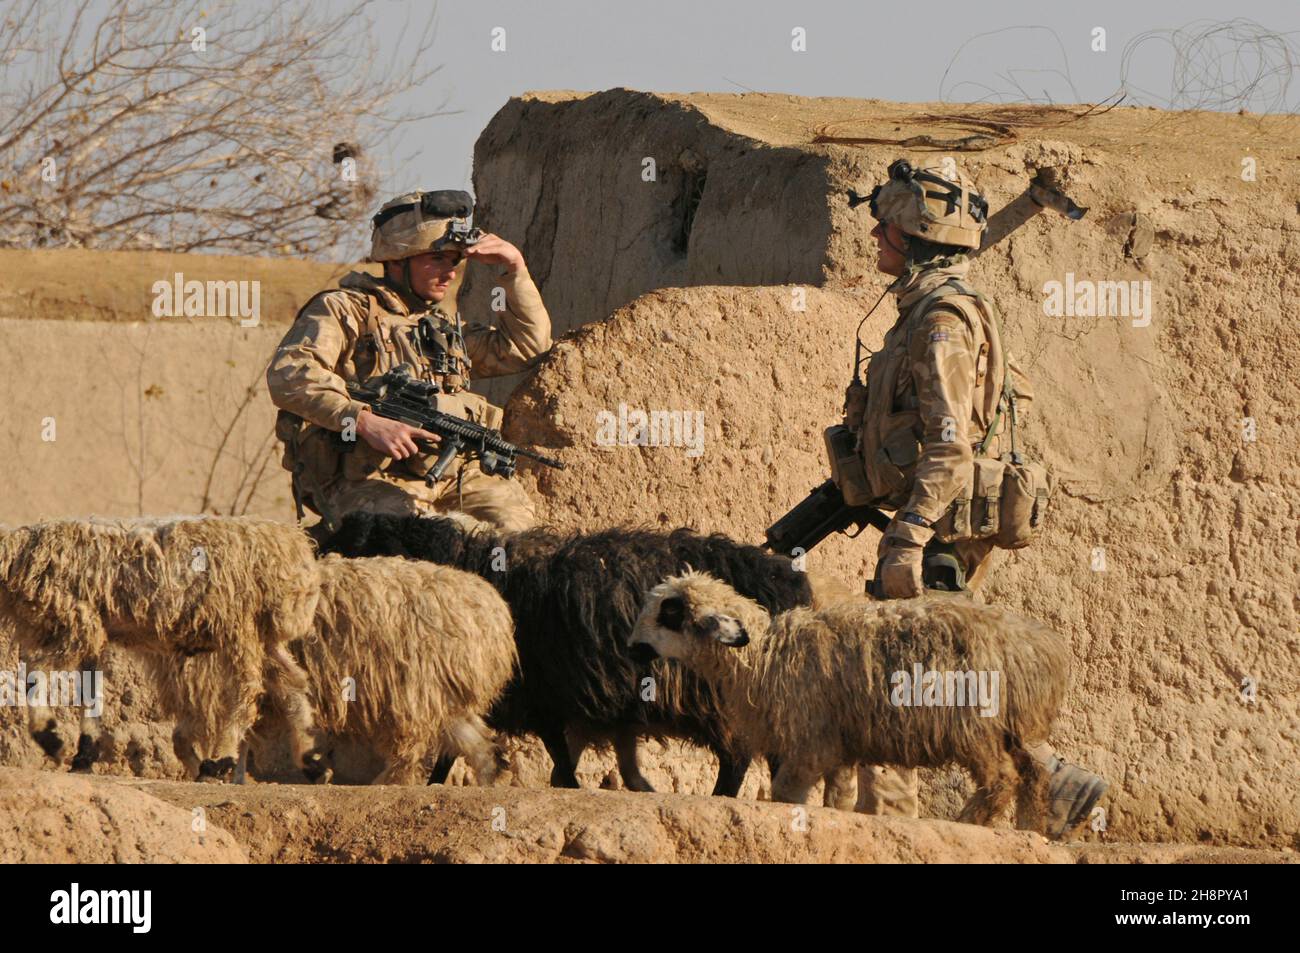 Los comandos de la Royal Marine británica caminan por un rebaño de ovejas durante la Operación Sond Chara, despararrando el distrito de Nad-e Ali, provincia de Helmand de los insurgentes, 30 de diciembre de 2008, en Lashkar Gah, Afganistán. Foto de stock